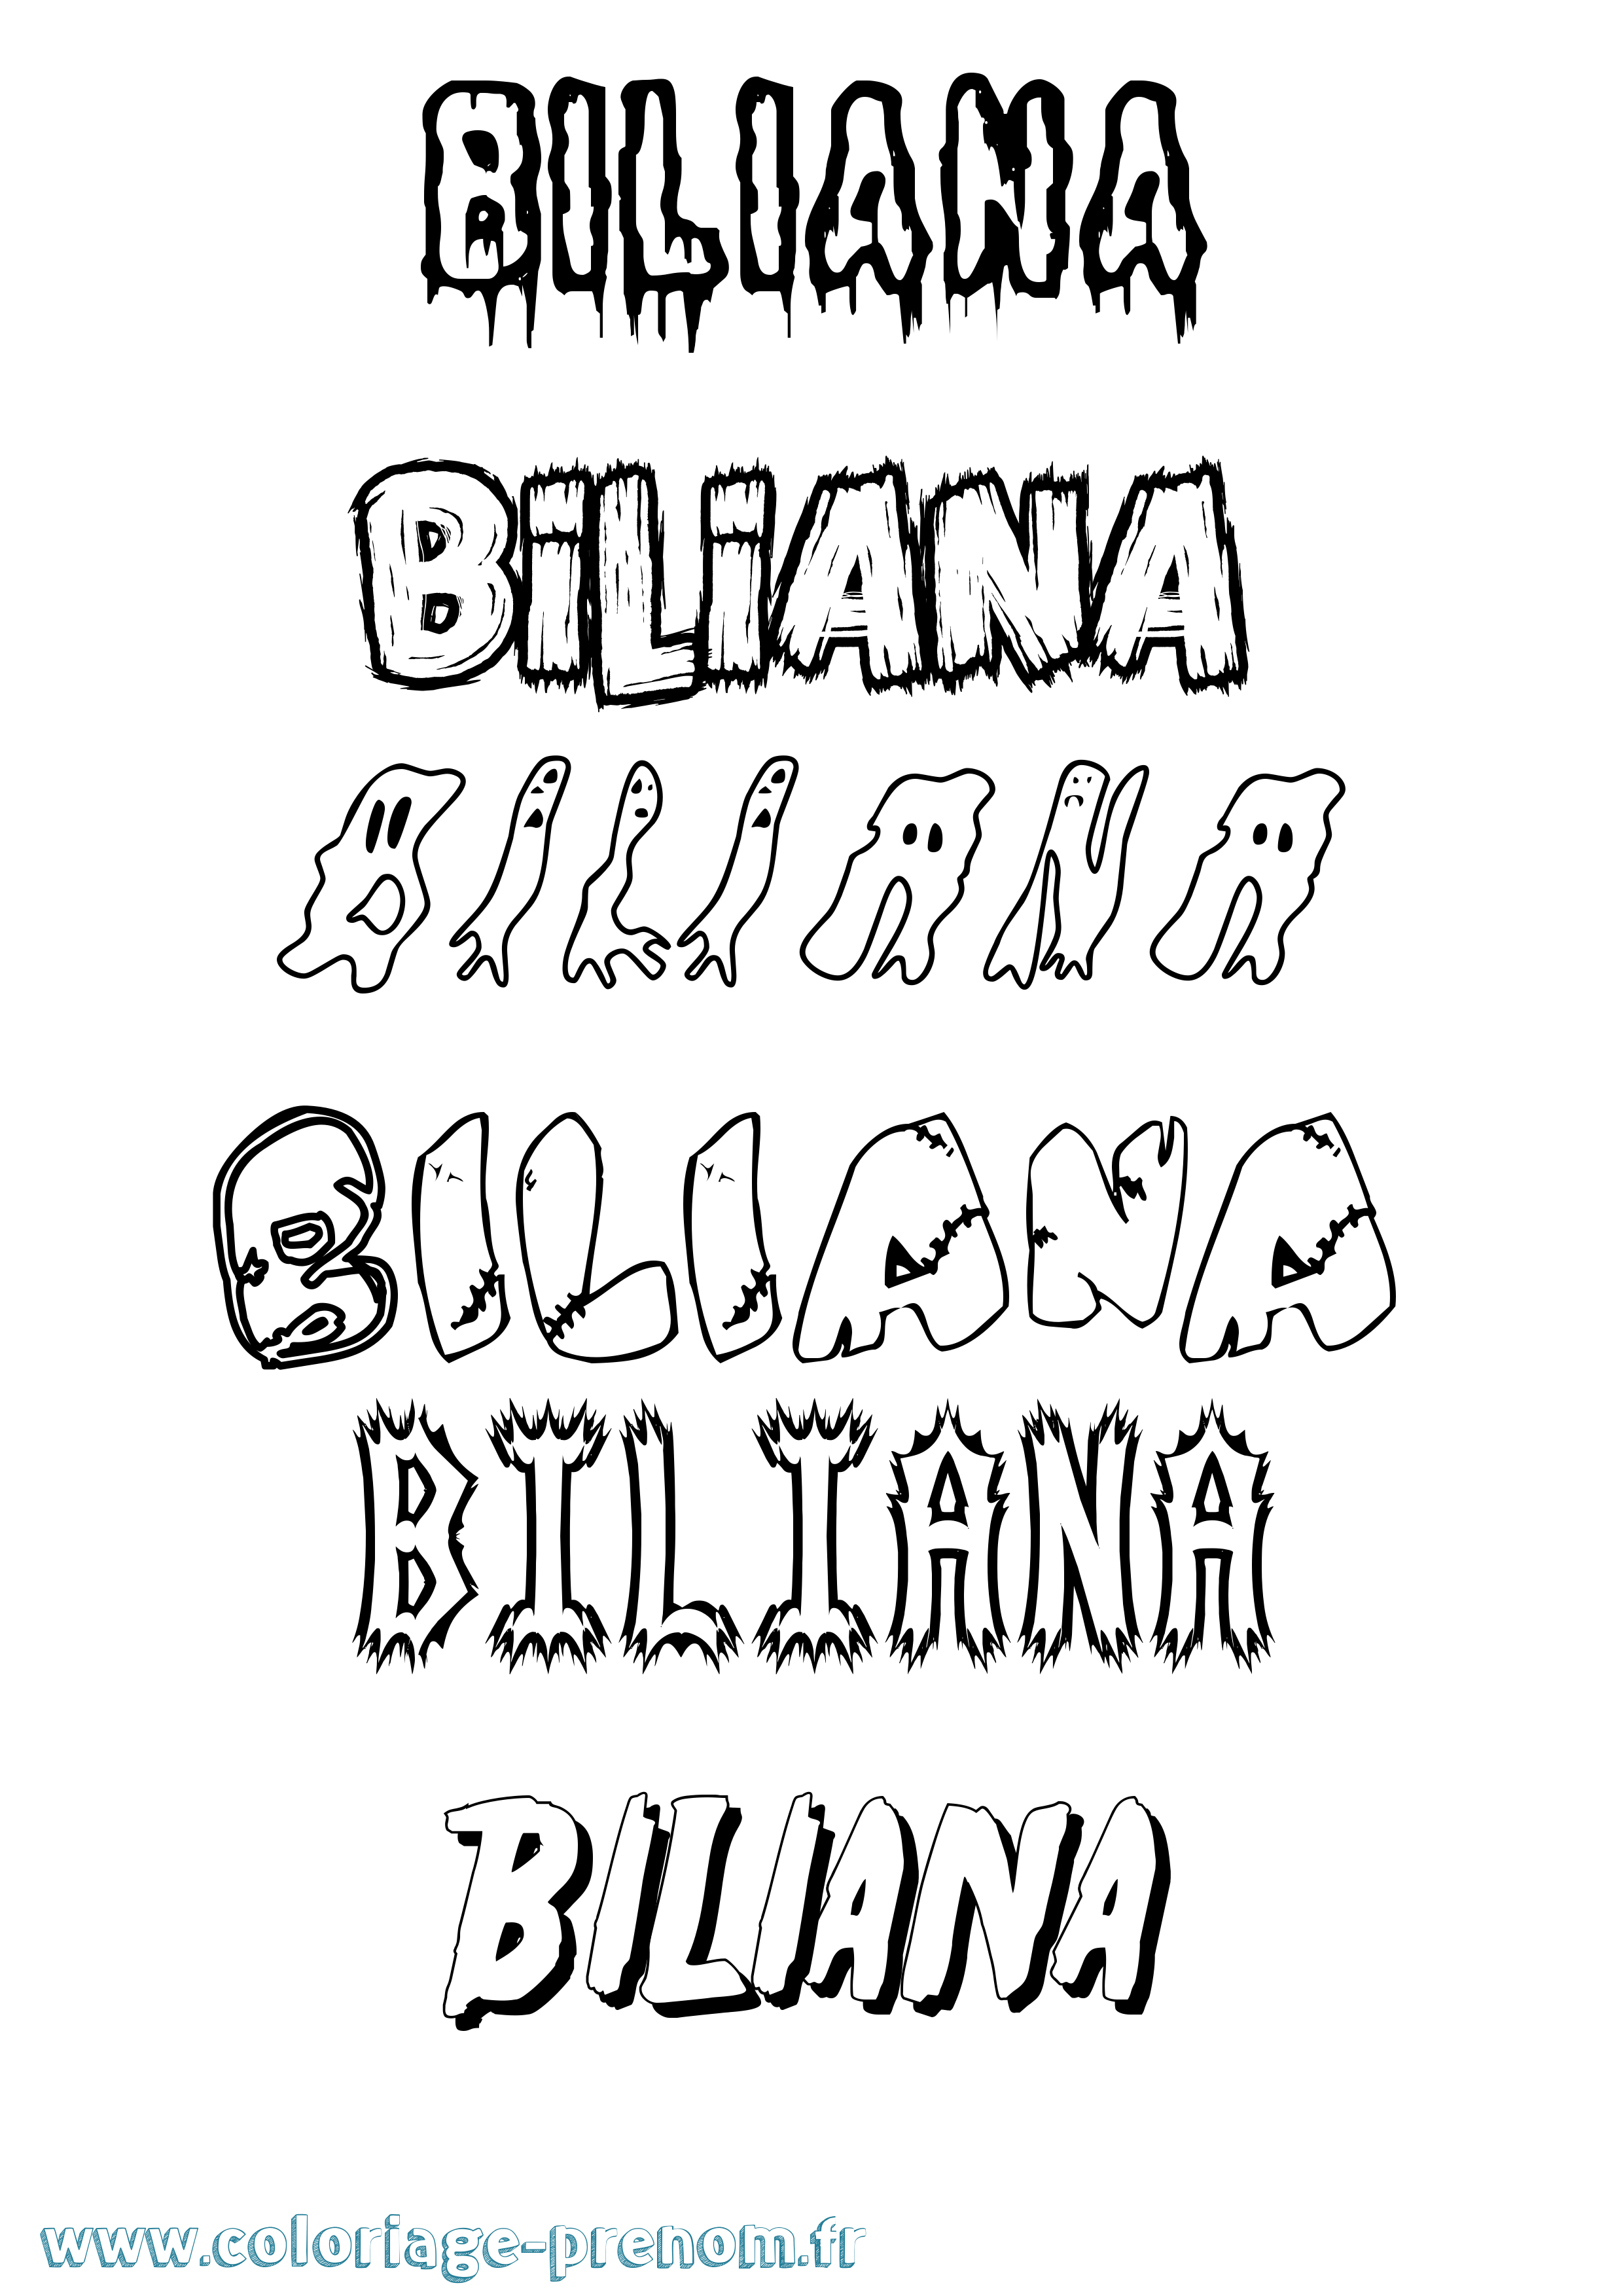 Coloriage prénom Biliana Frisson